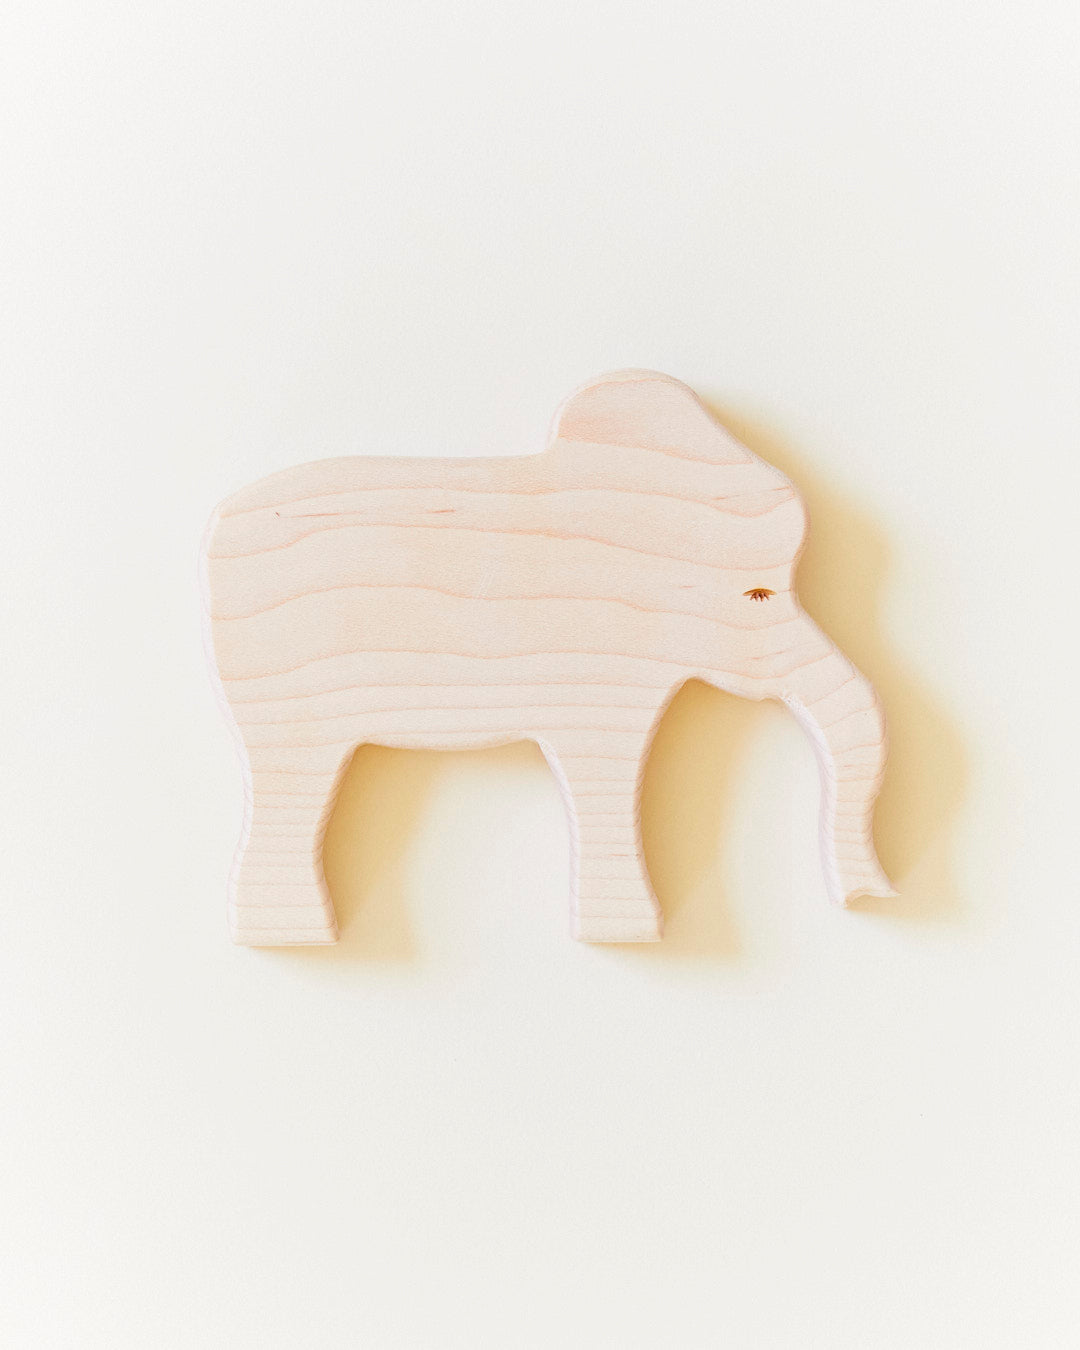 Wooden elephant Pláneta